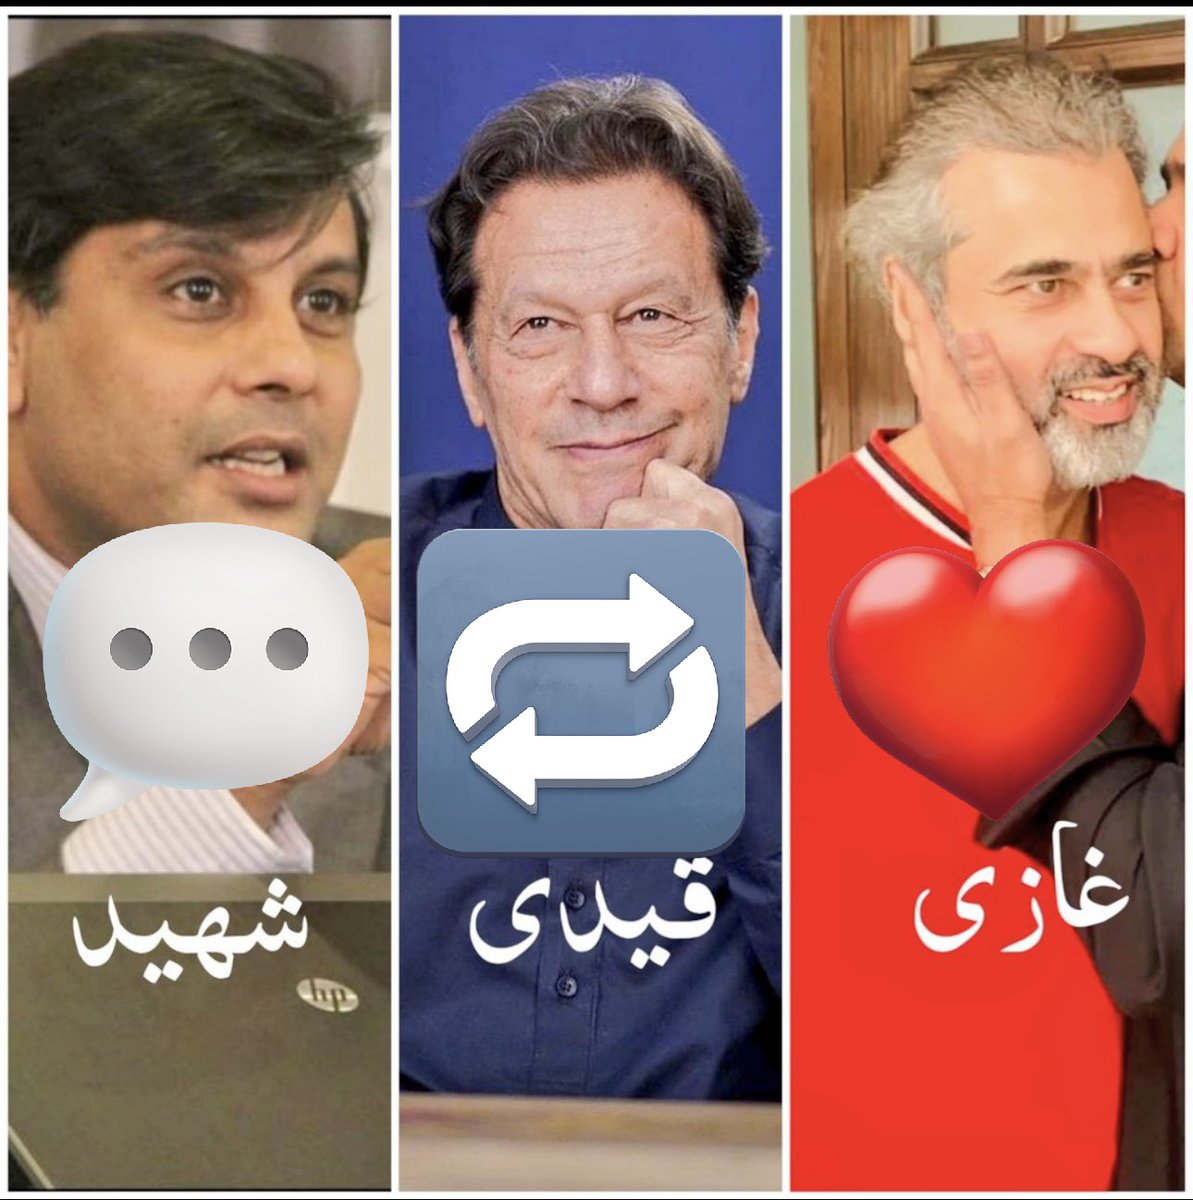 آج اس ٹویٹ پر آنے والے رسپانس سے اندازہ ہو جائے گا کہ پاکستانی قوم ان تین شہزادوں سے کتنی محبت کرتی ہے ؟؟
#بےگناہ_قيدی_نمبر_943